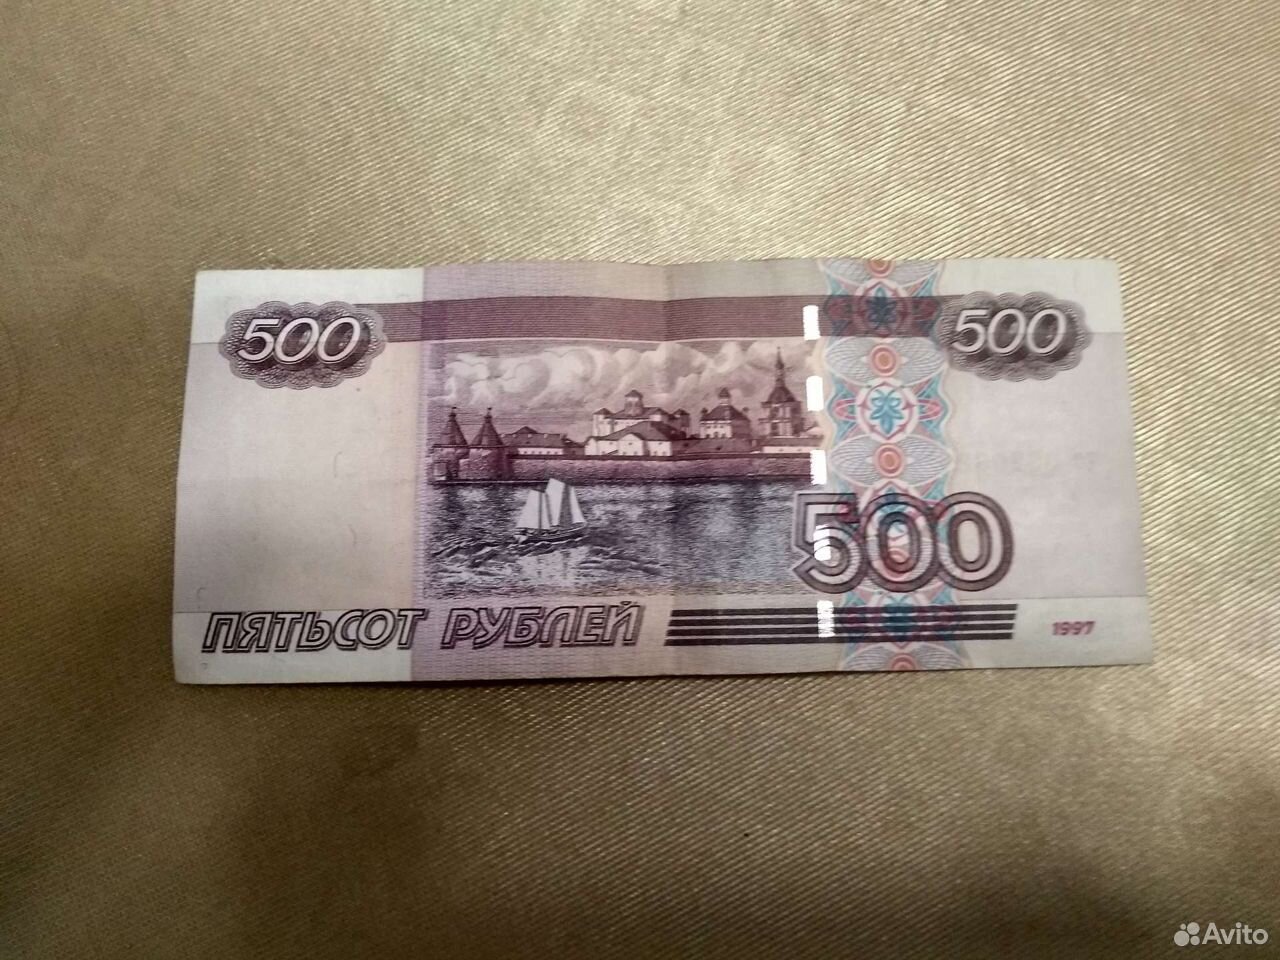 500 рублей номер. Купюра 500 рублей. 500 Рублей. Купюра 500 рублей 1997 года. Купюра 500 рублей 1997.